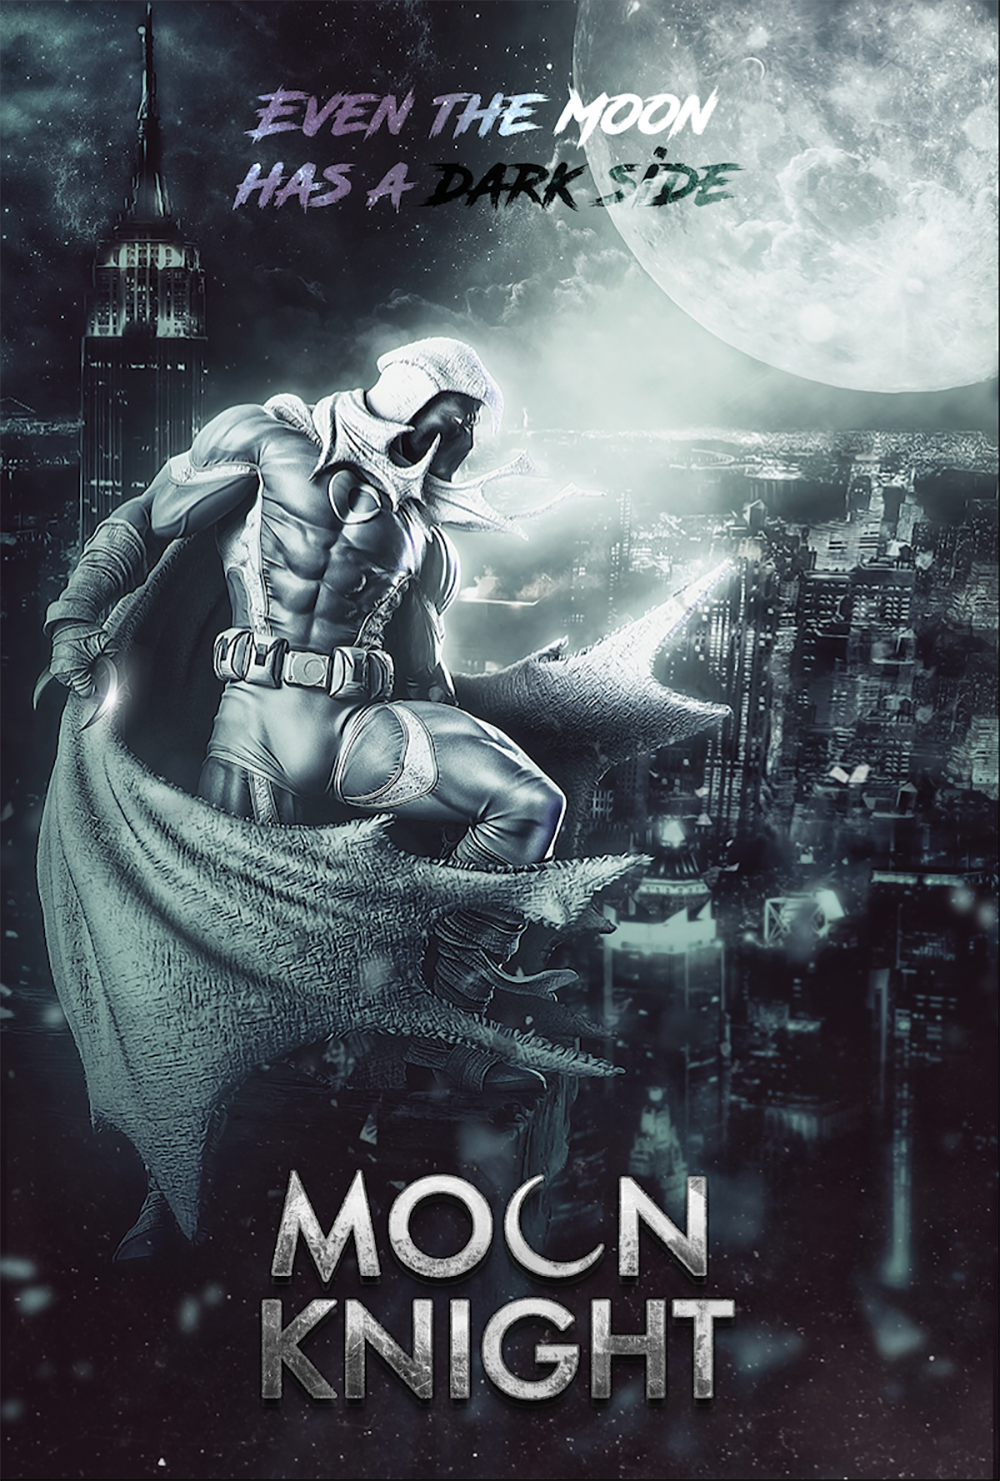 Moon Knight film fan poster